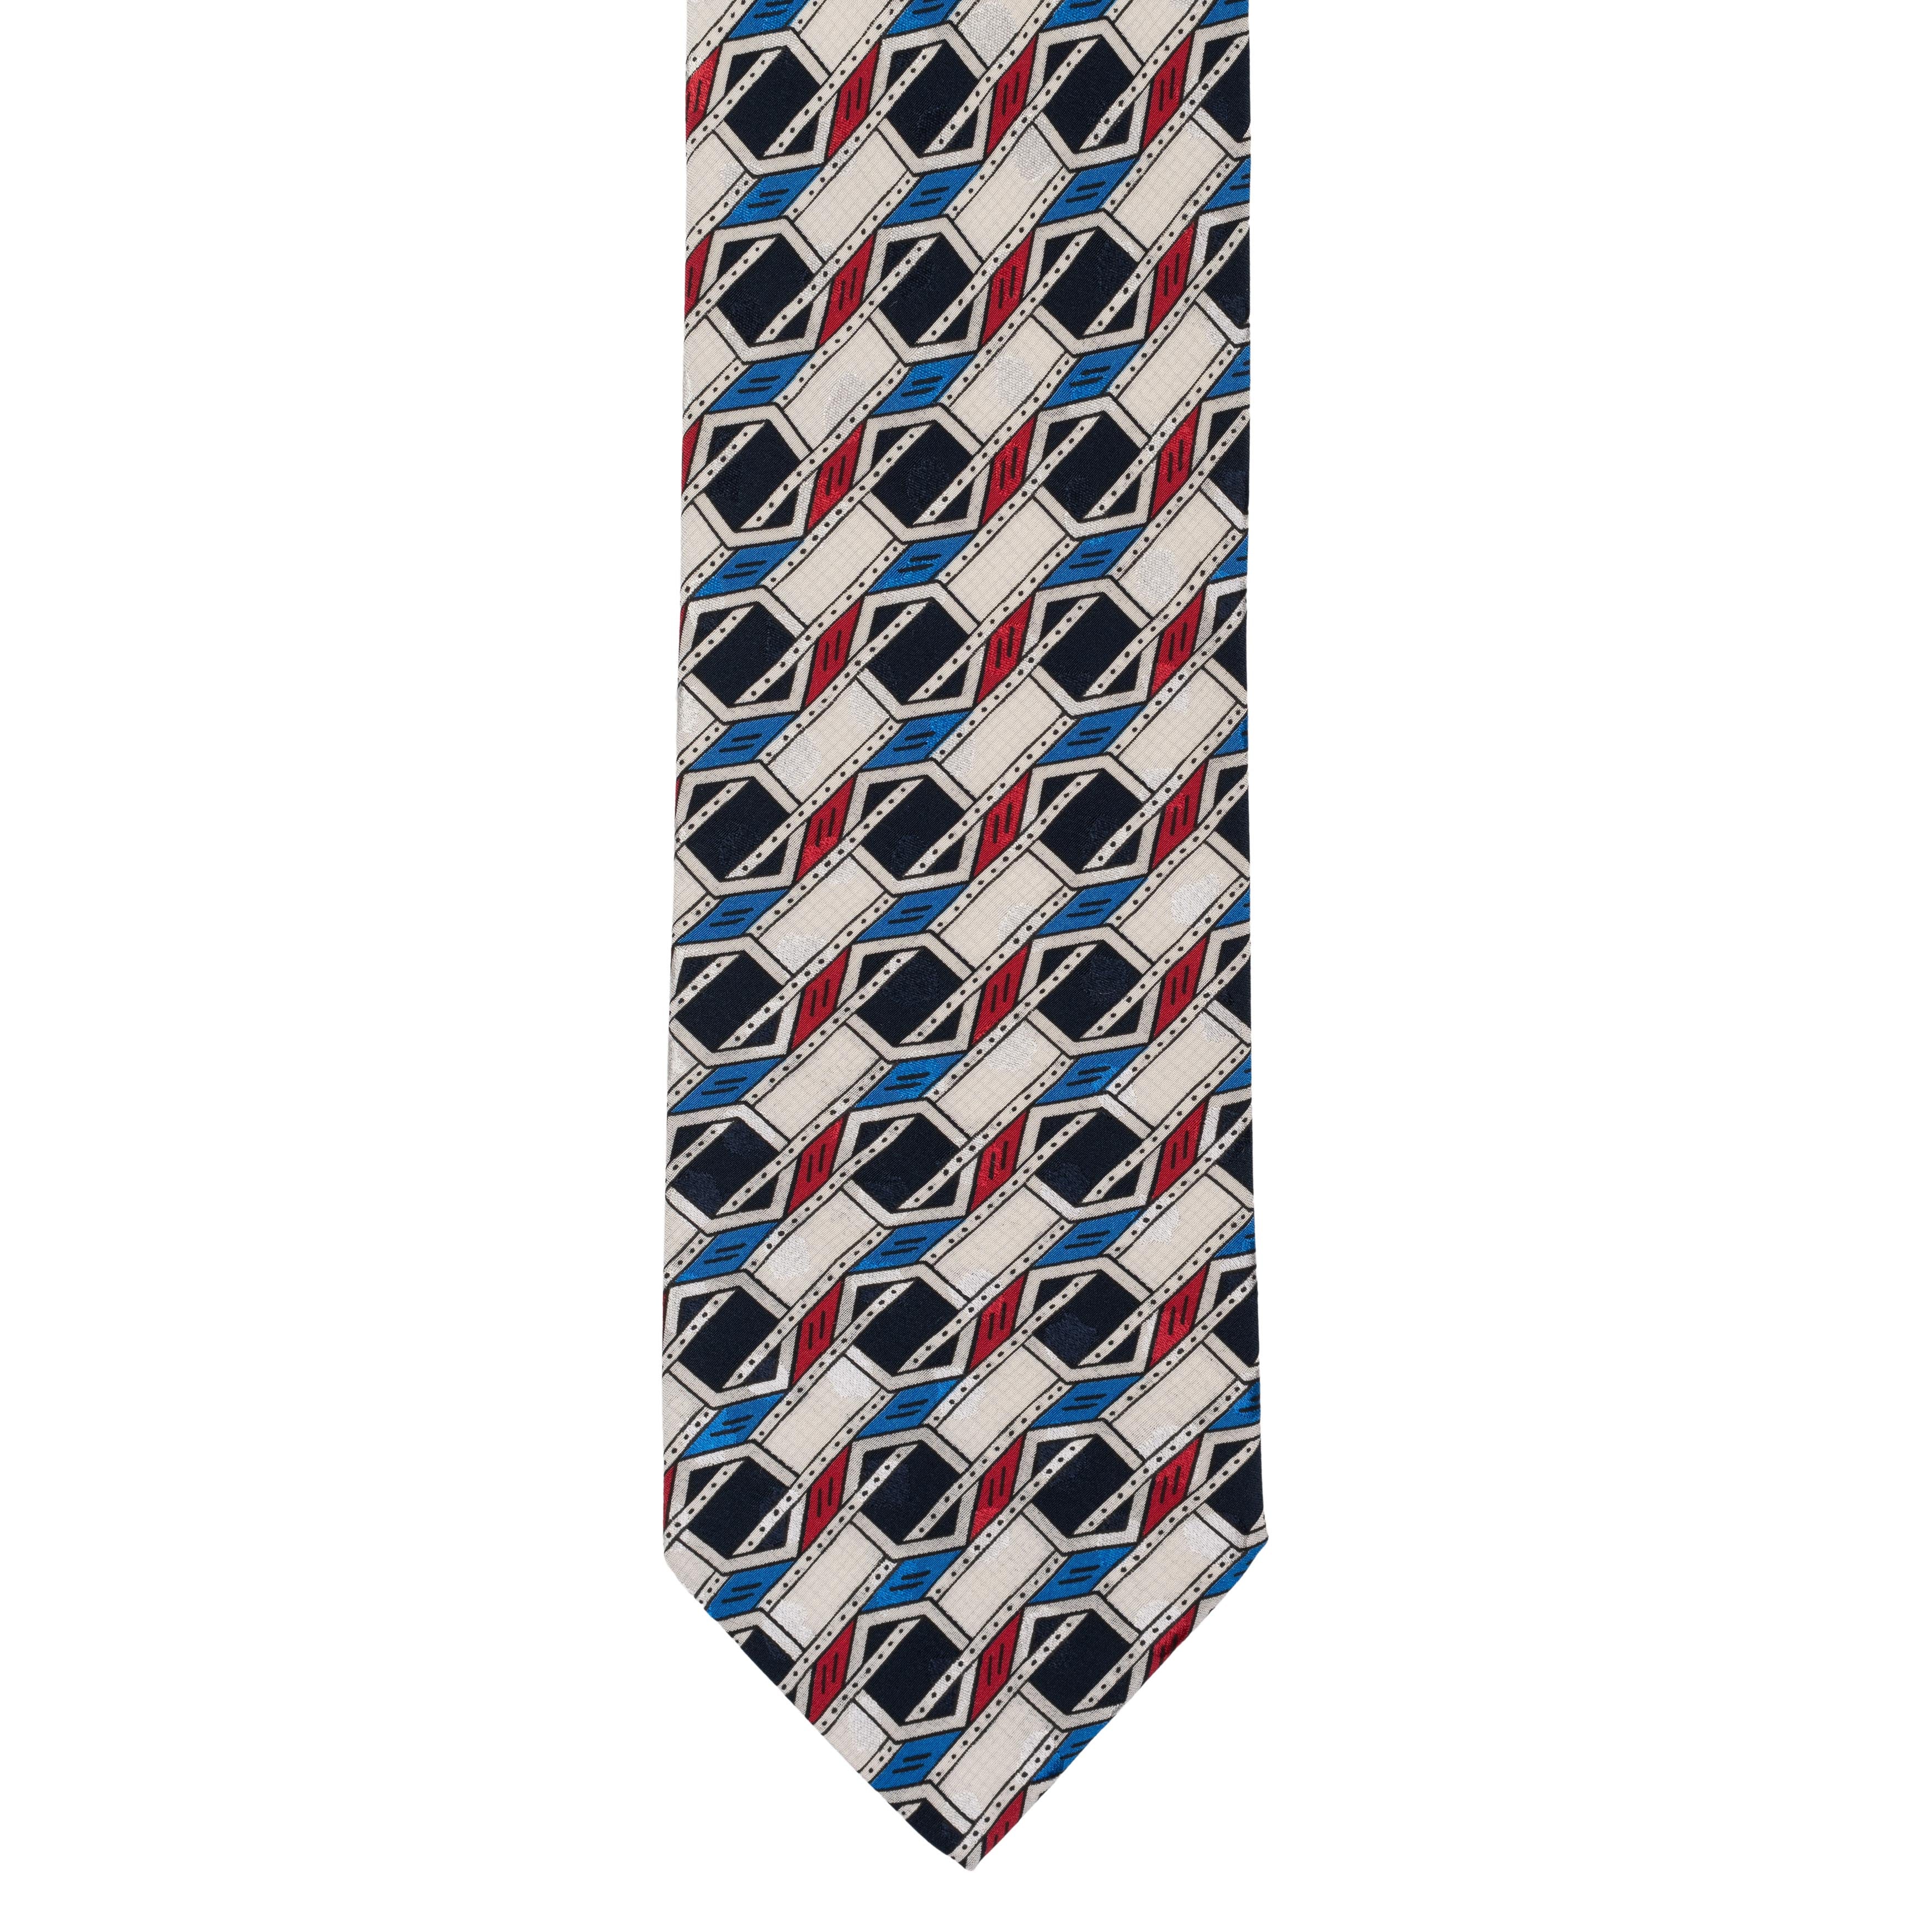 BRIONI Handmade Multi-color Geometric Silk Tie NEW BRIONI